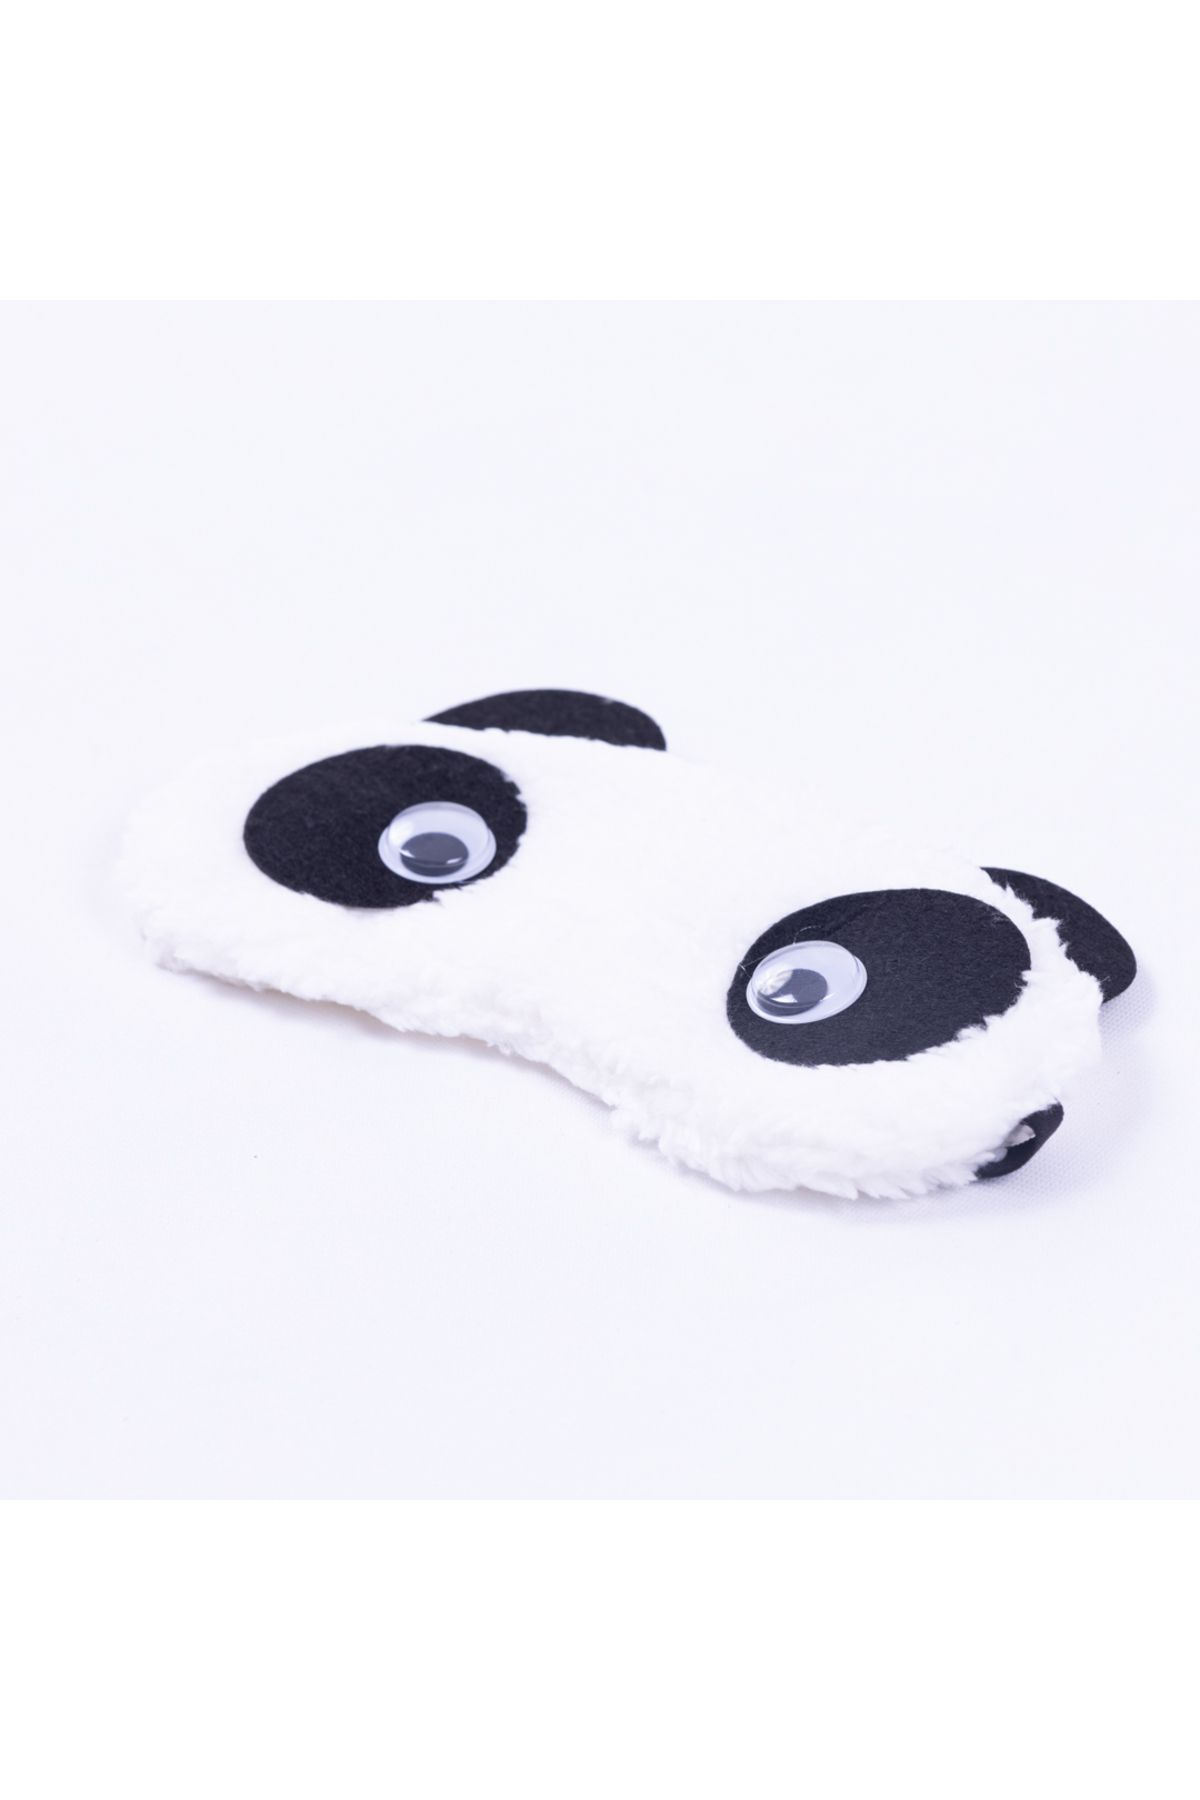 Bimotif Uyku göz bandı, yıkanabilir Panda